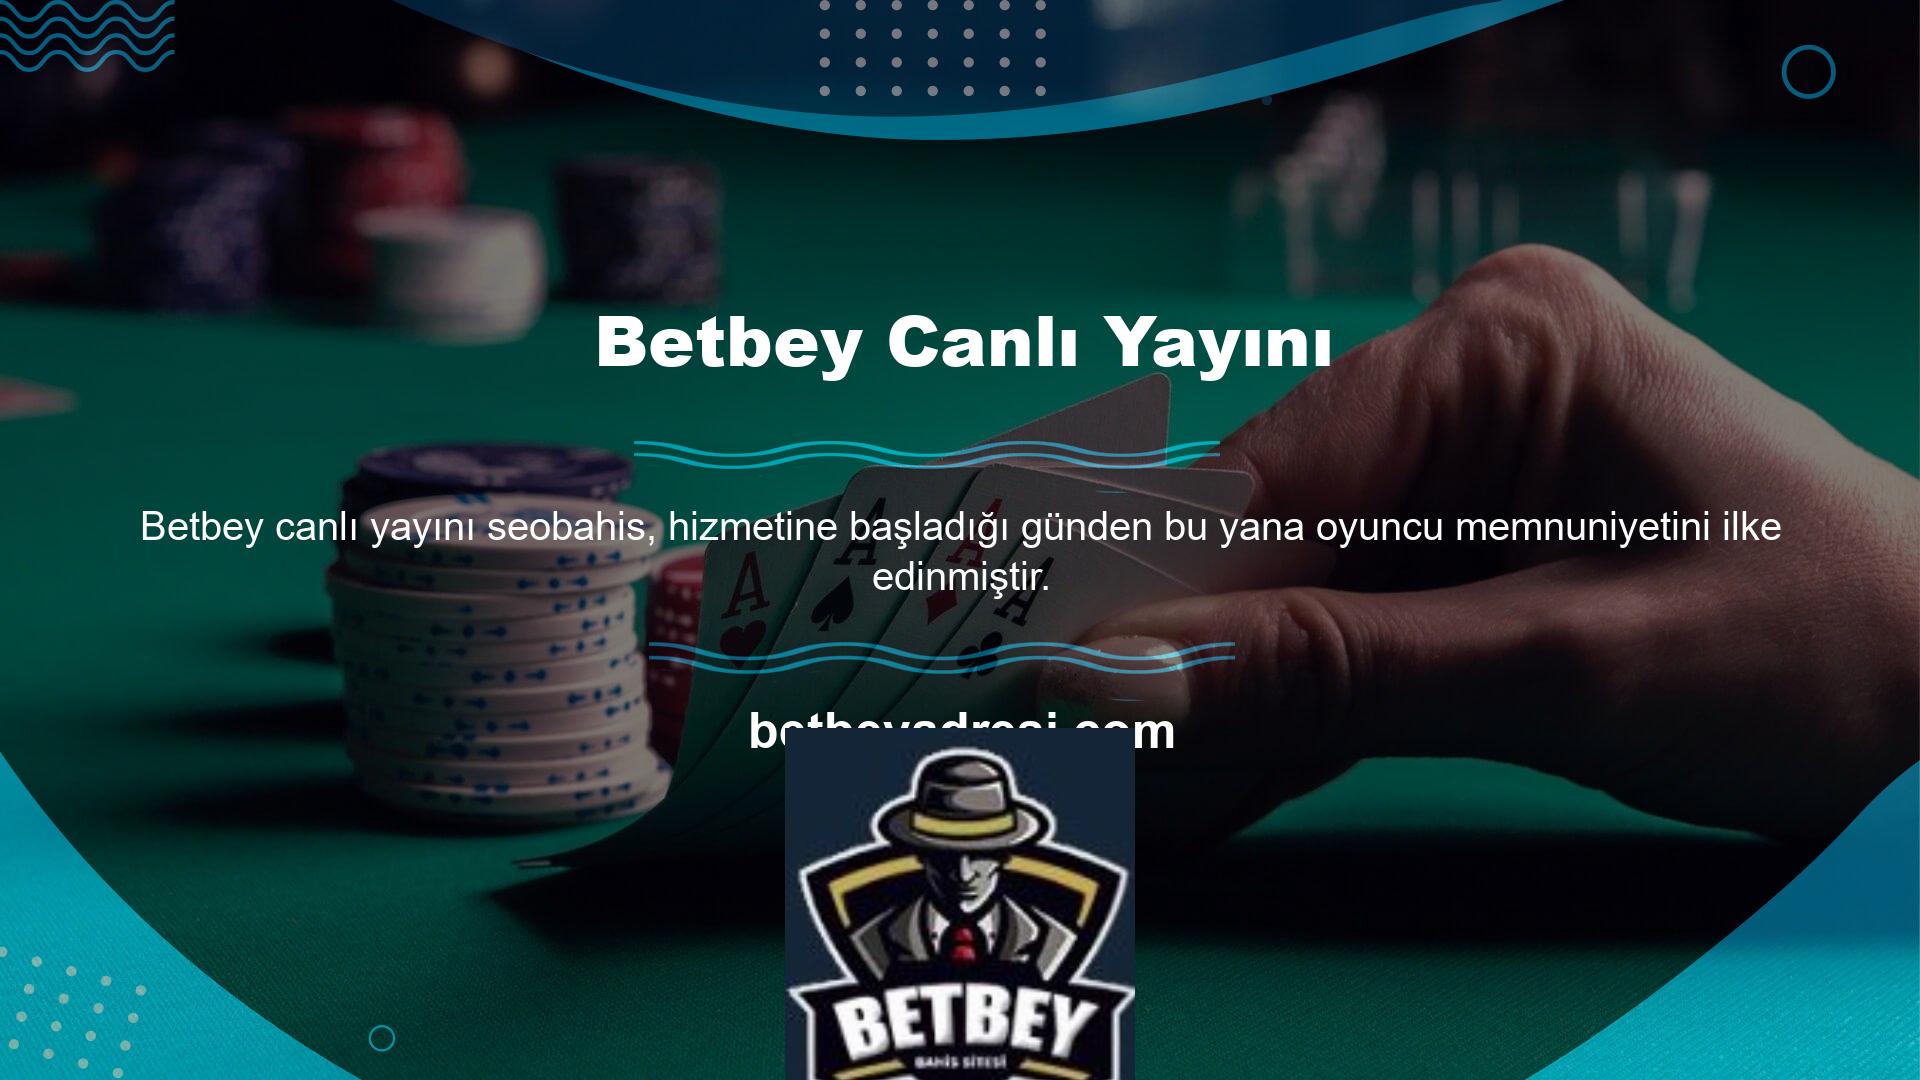 Bunun sonucunda Betbey en popüler casino sitelerinden biri haline geldi